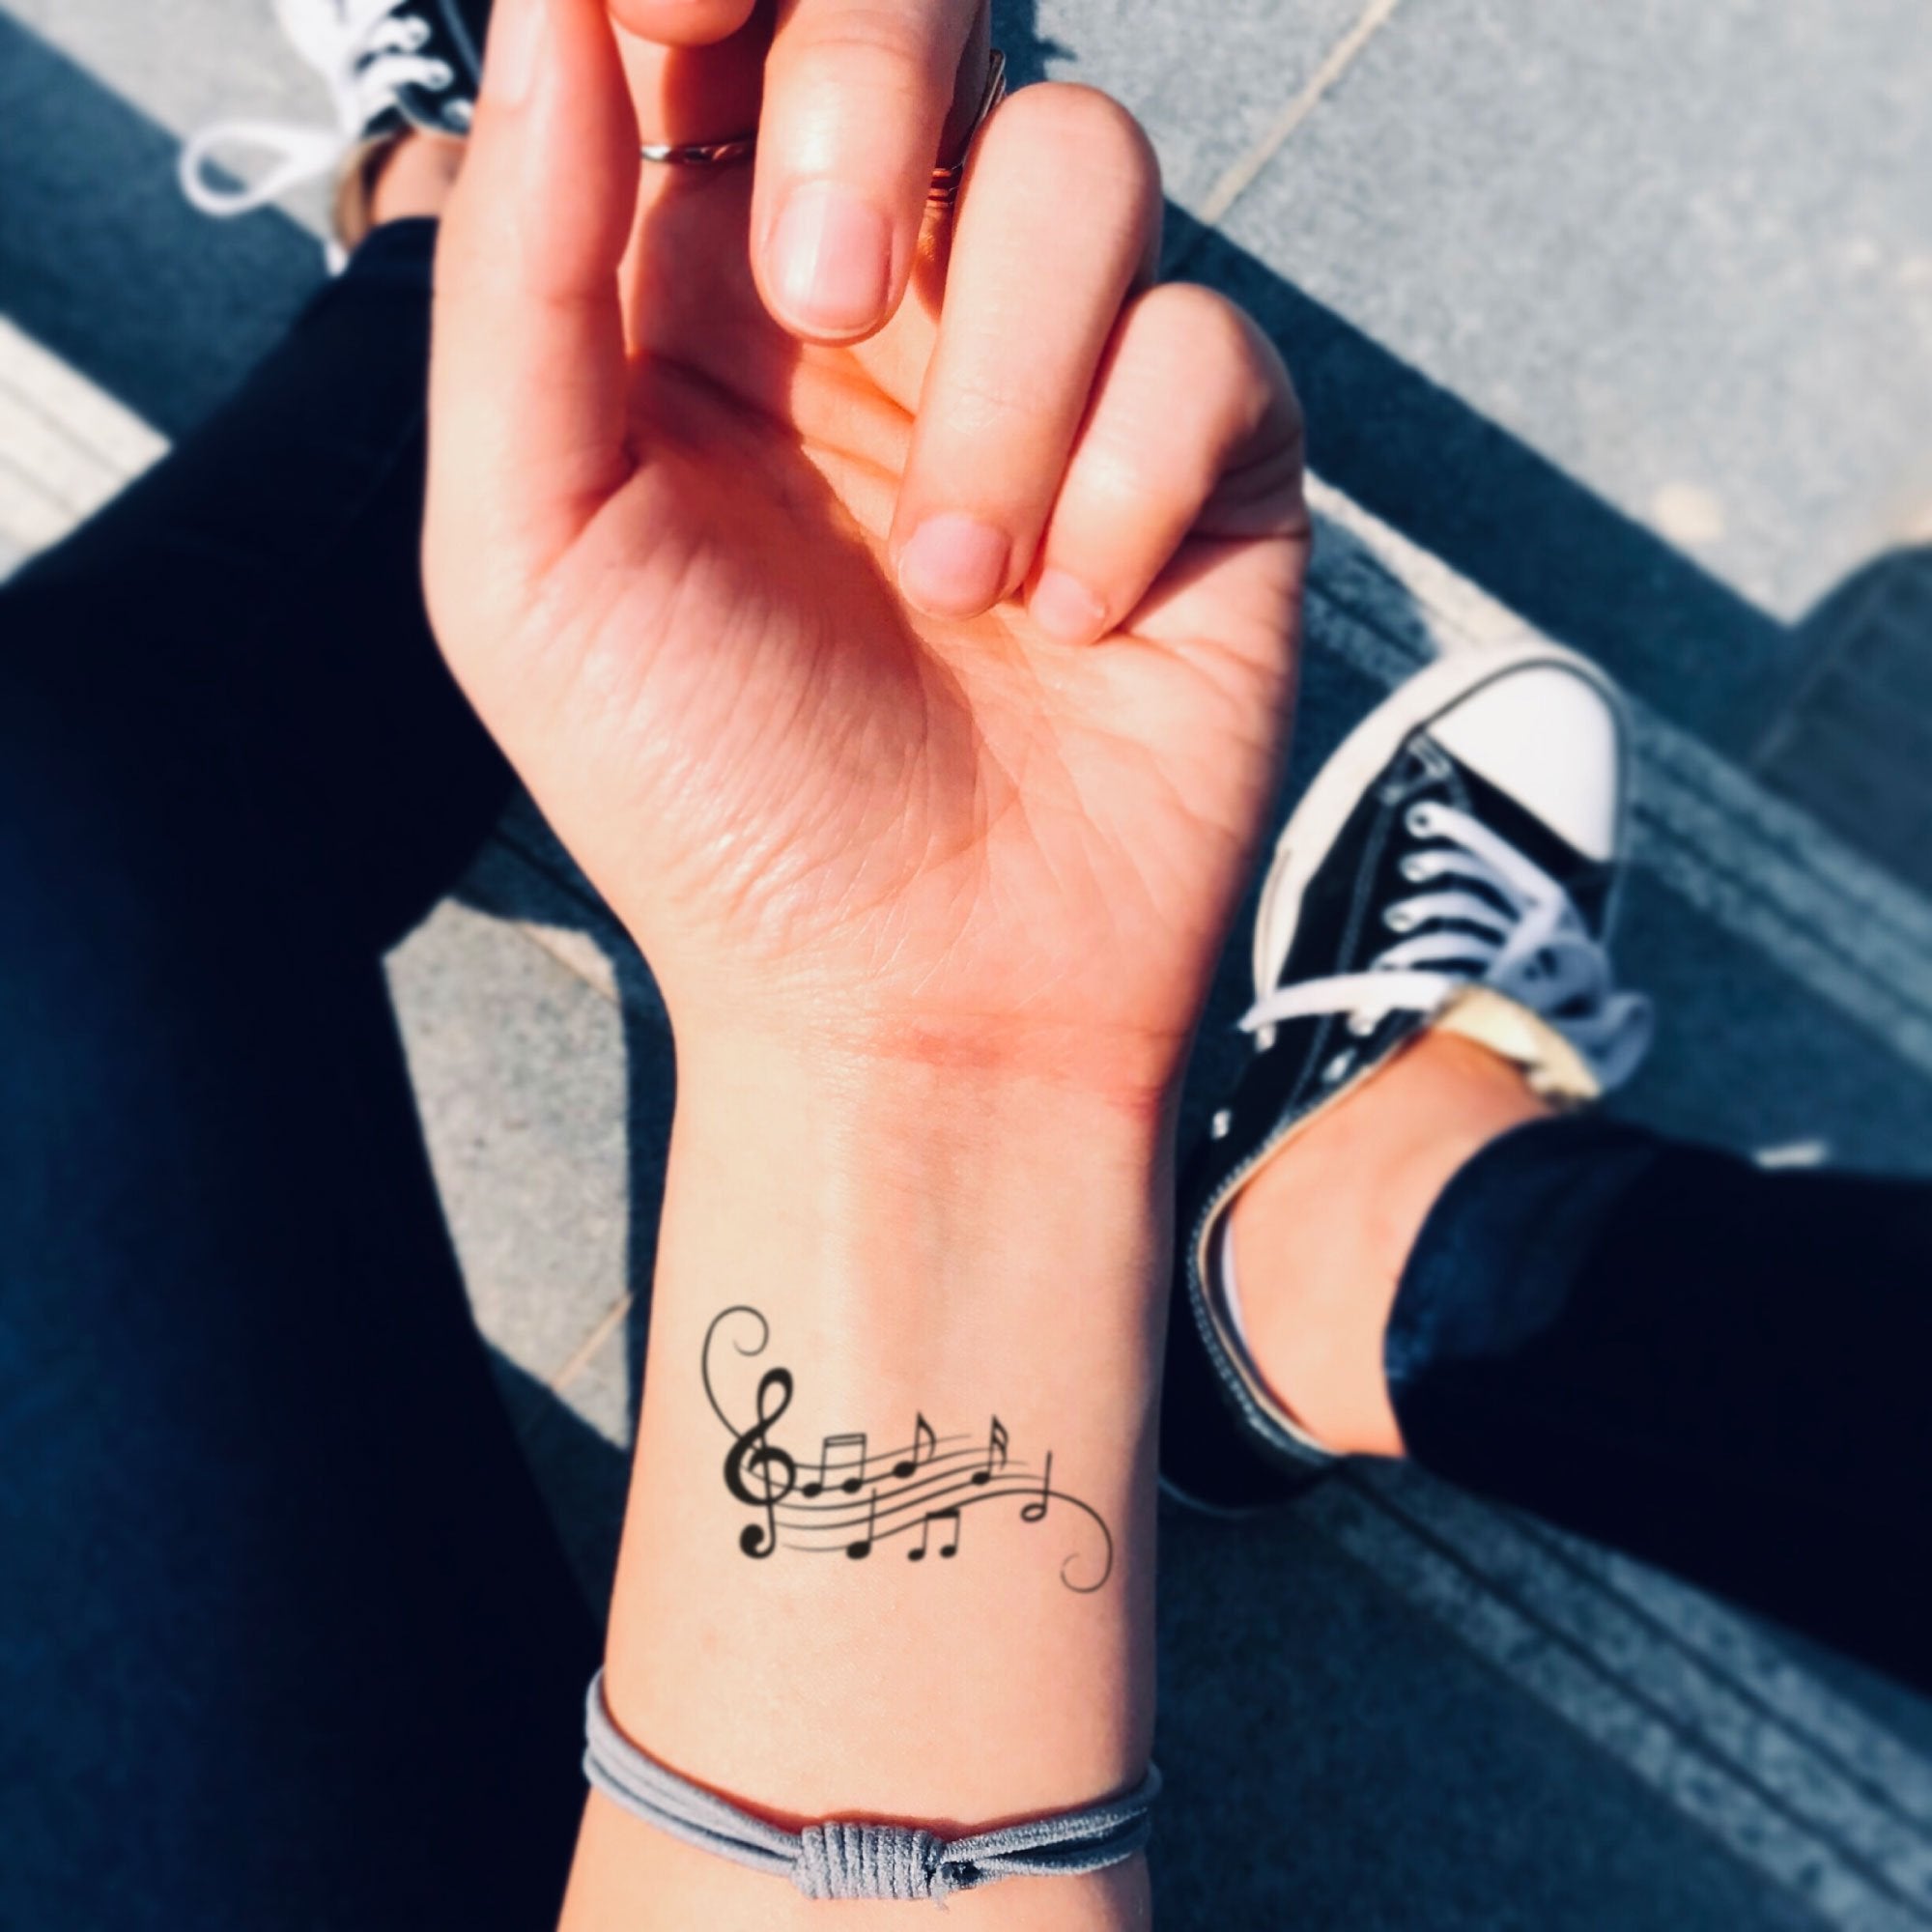 Objeción Remo Comorama piano tattoo ideas Bloquear Incorporar Limitado